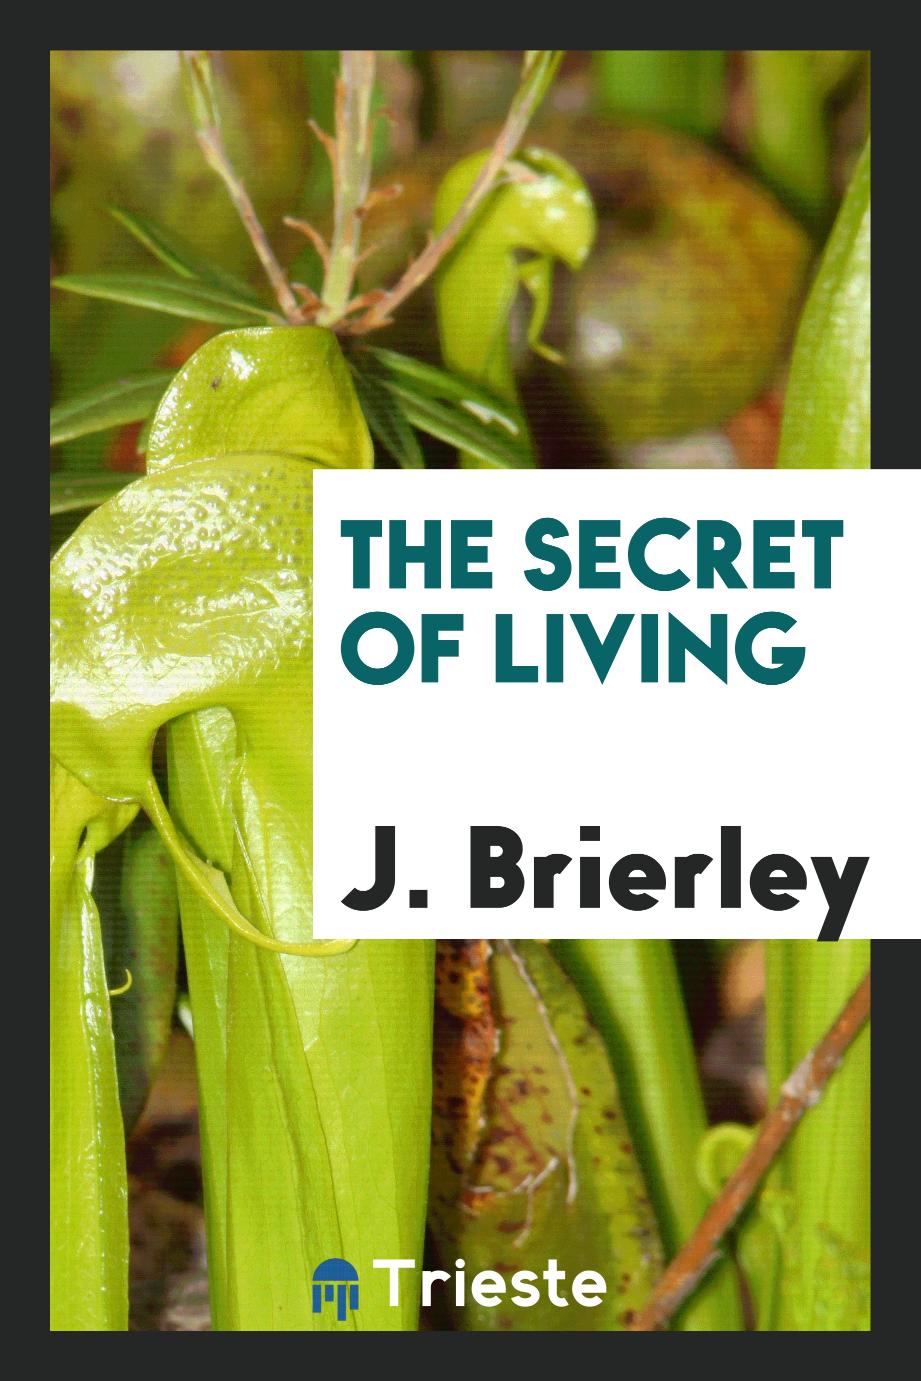 The secret of living